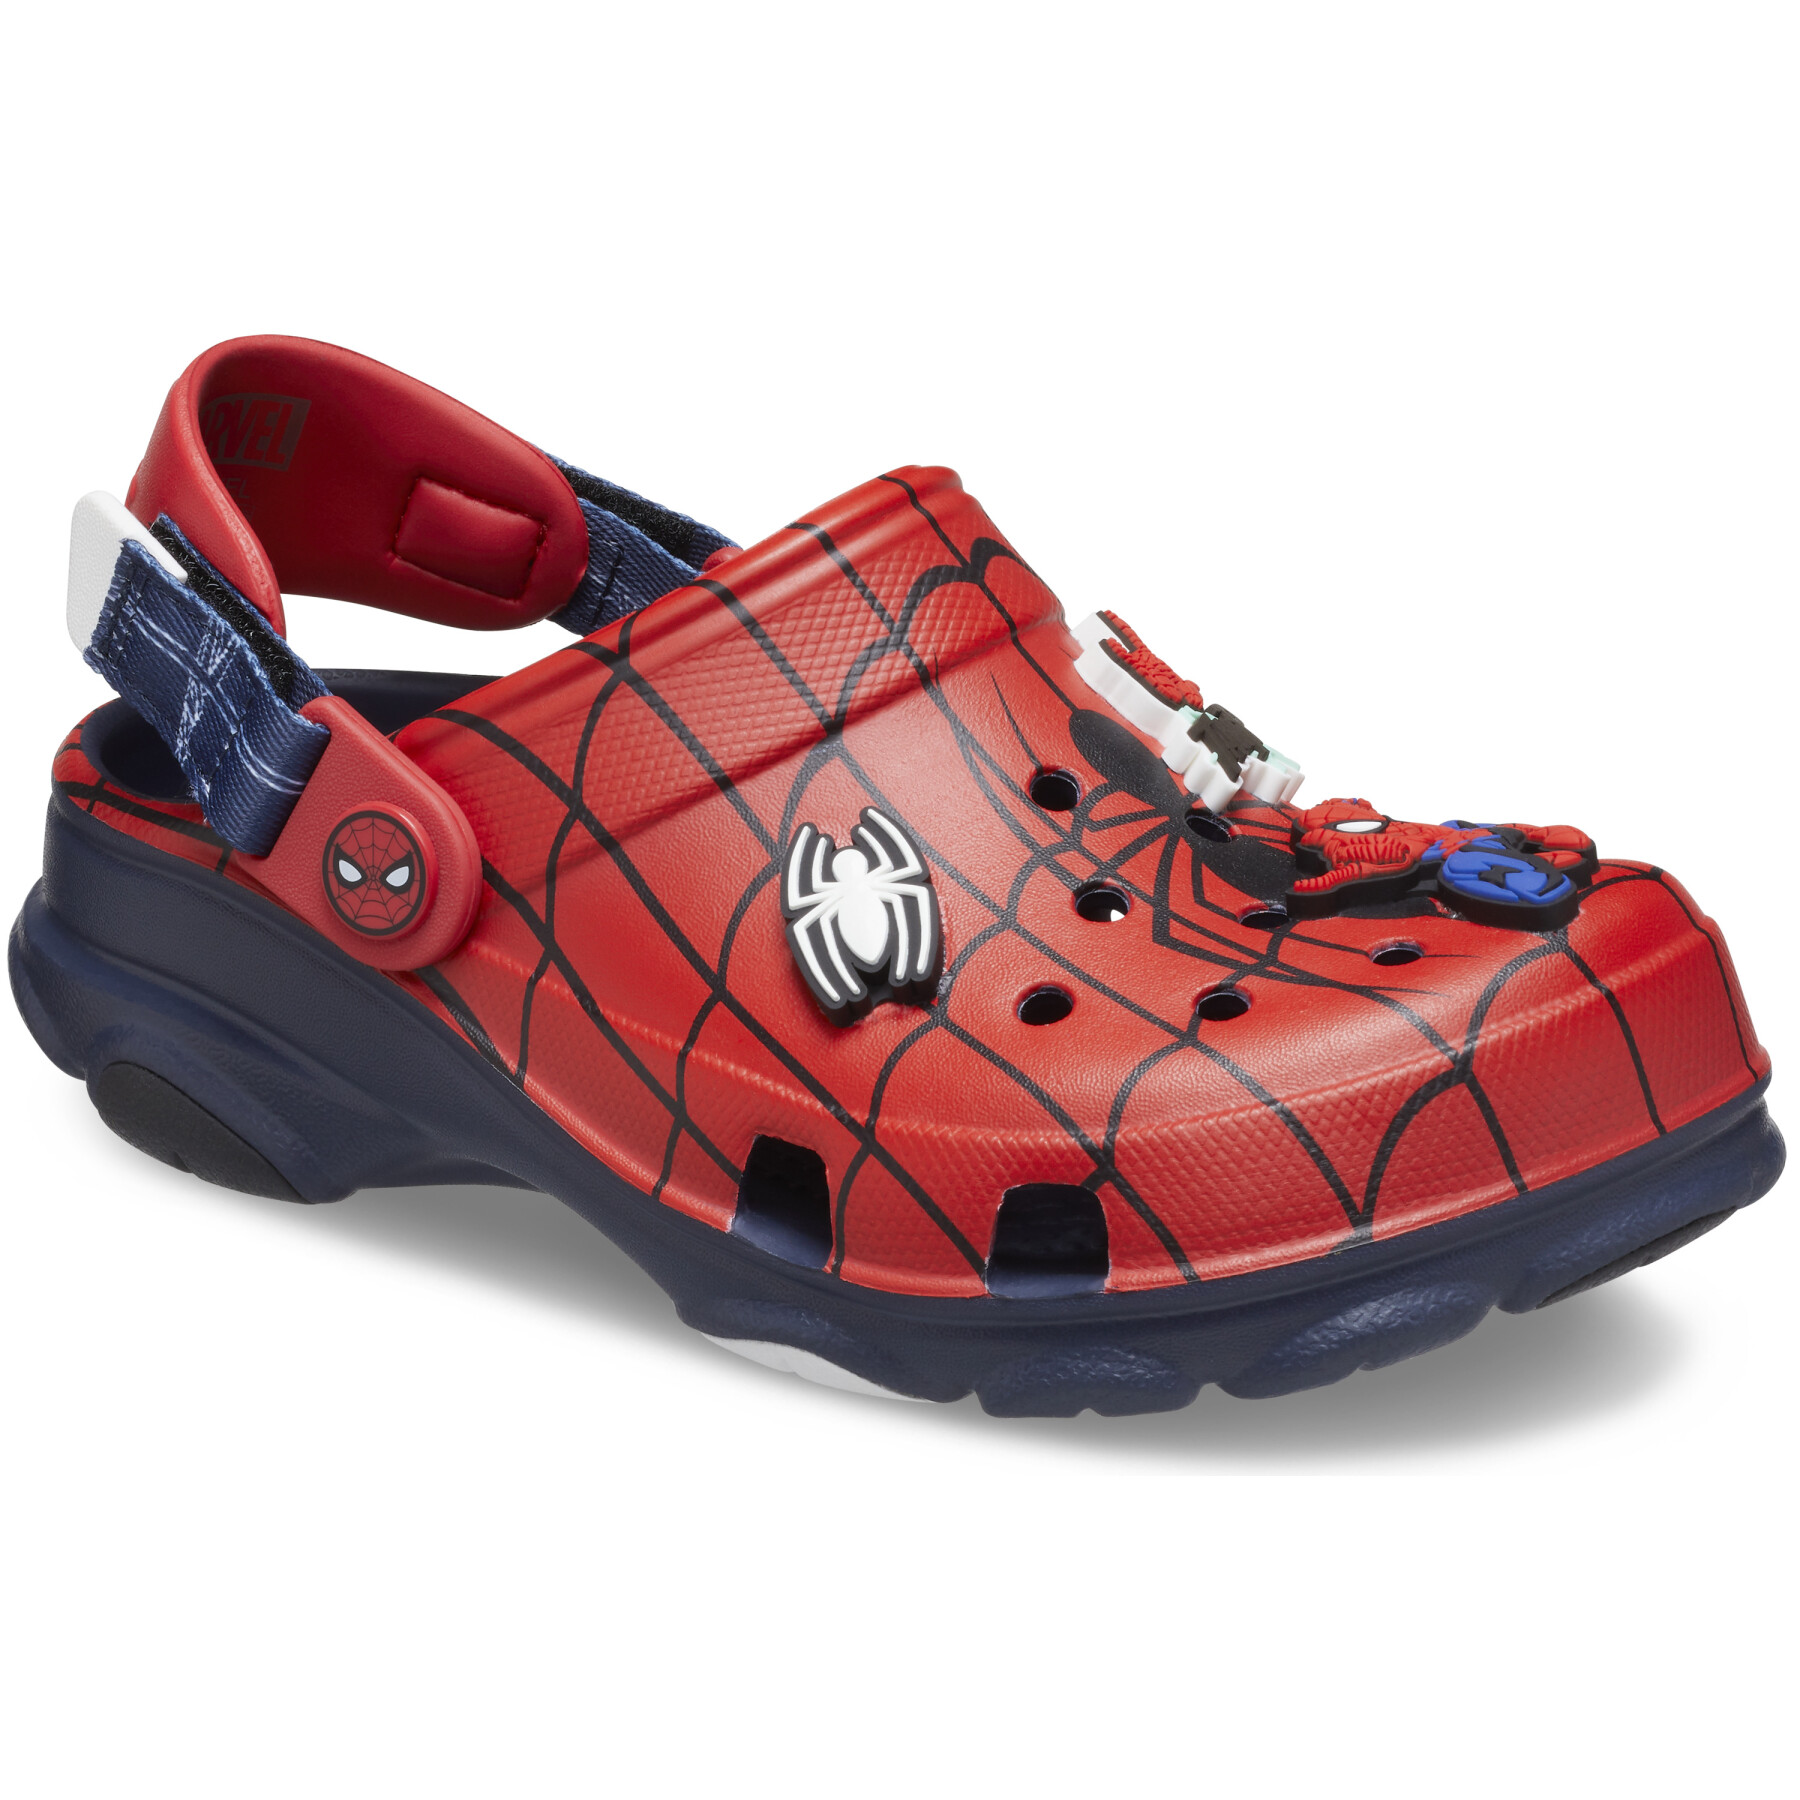 Tamancos para crianças Crocs Spider-Man All-Terrain